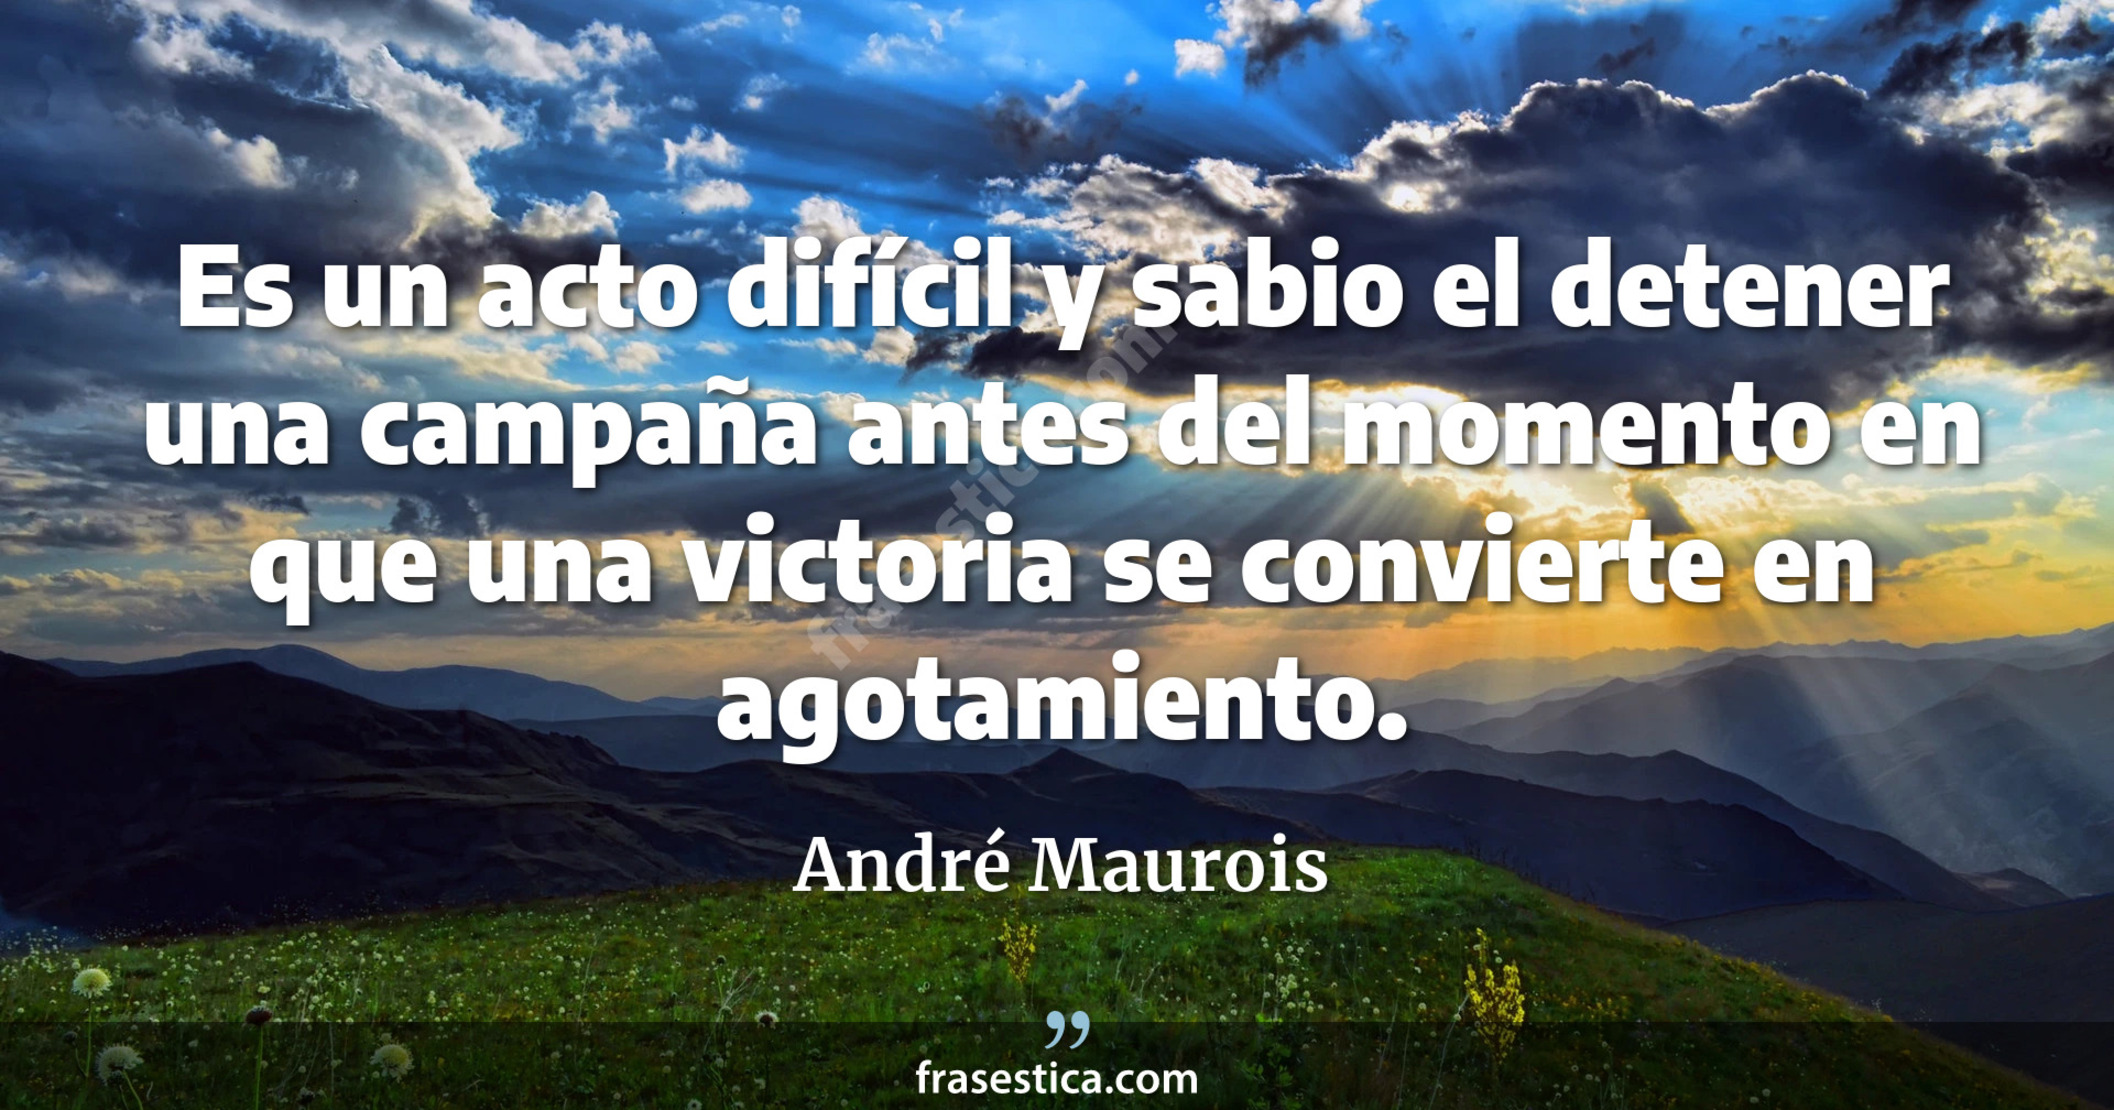 Es un acto difícil y sabio el detener una campaña antes del momento en que una victoria se convierte en agotamiento. - André Maurois